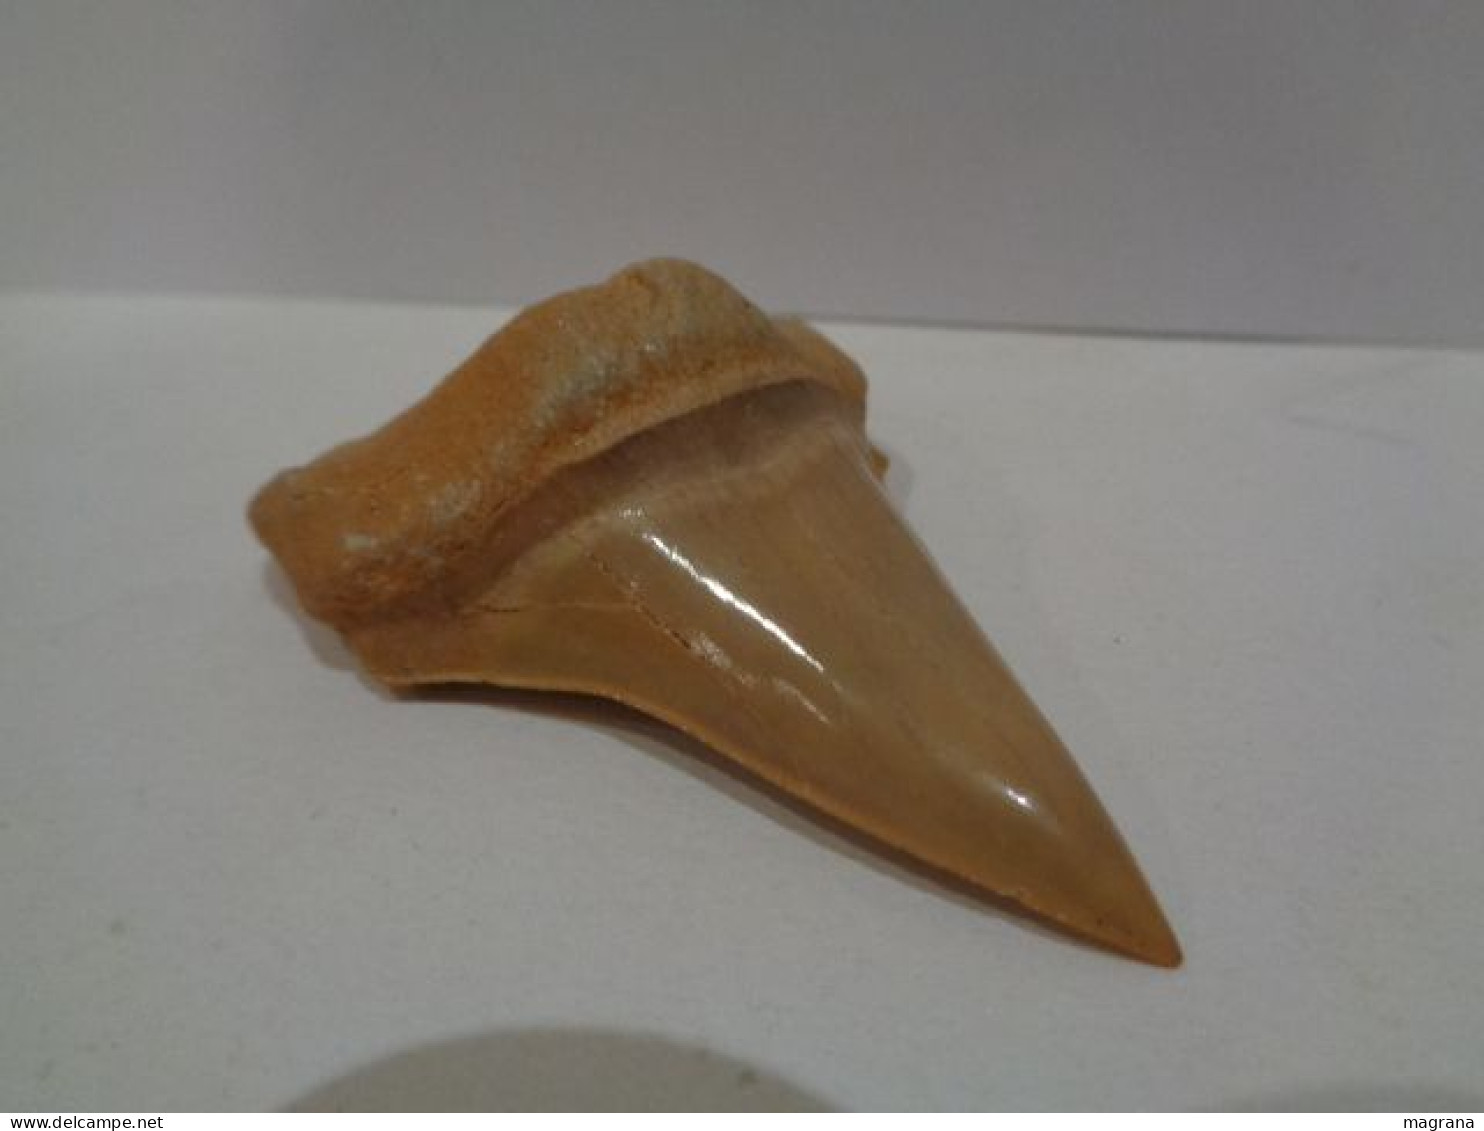 Gran diente fósil teratologico de tiburón. Otodus Obliquus. Edad: Paleoceno- Eoceno. Procedencia:  Marruecos, Oued Zem.